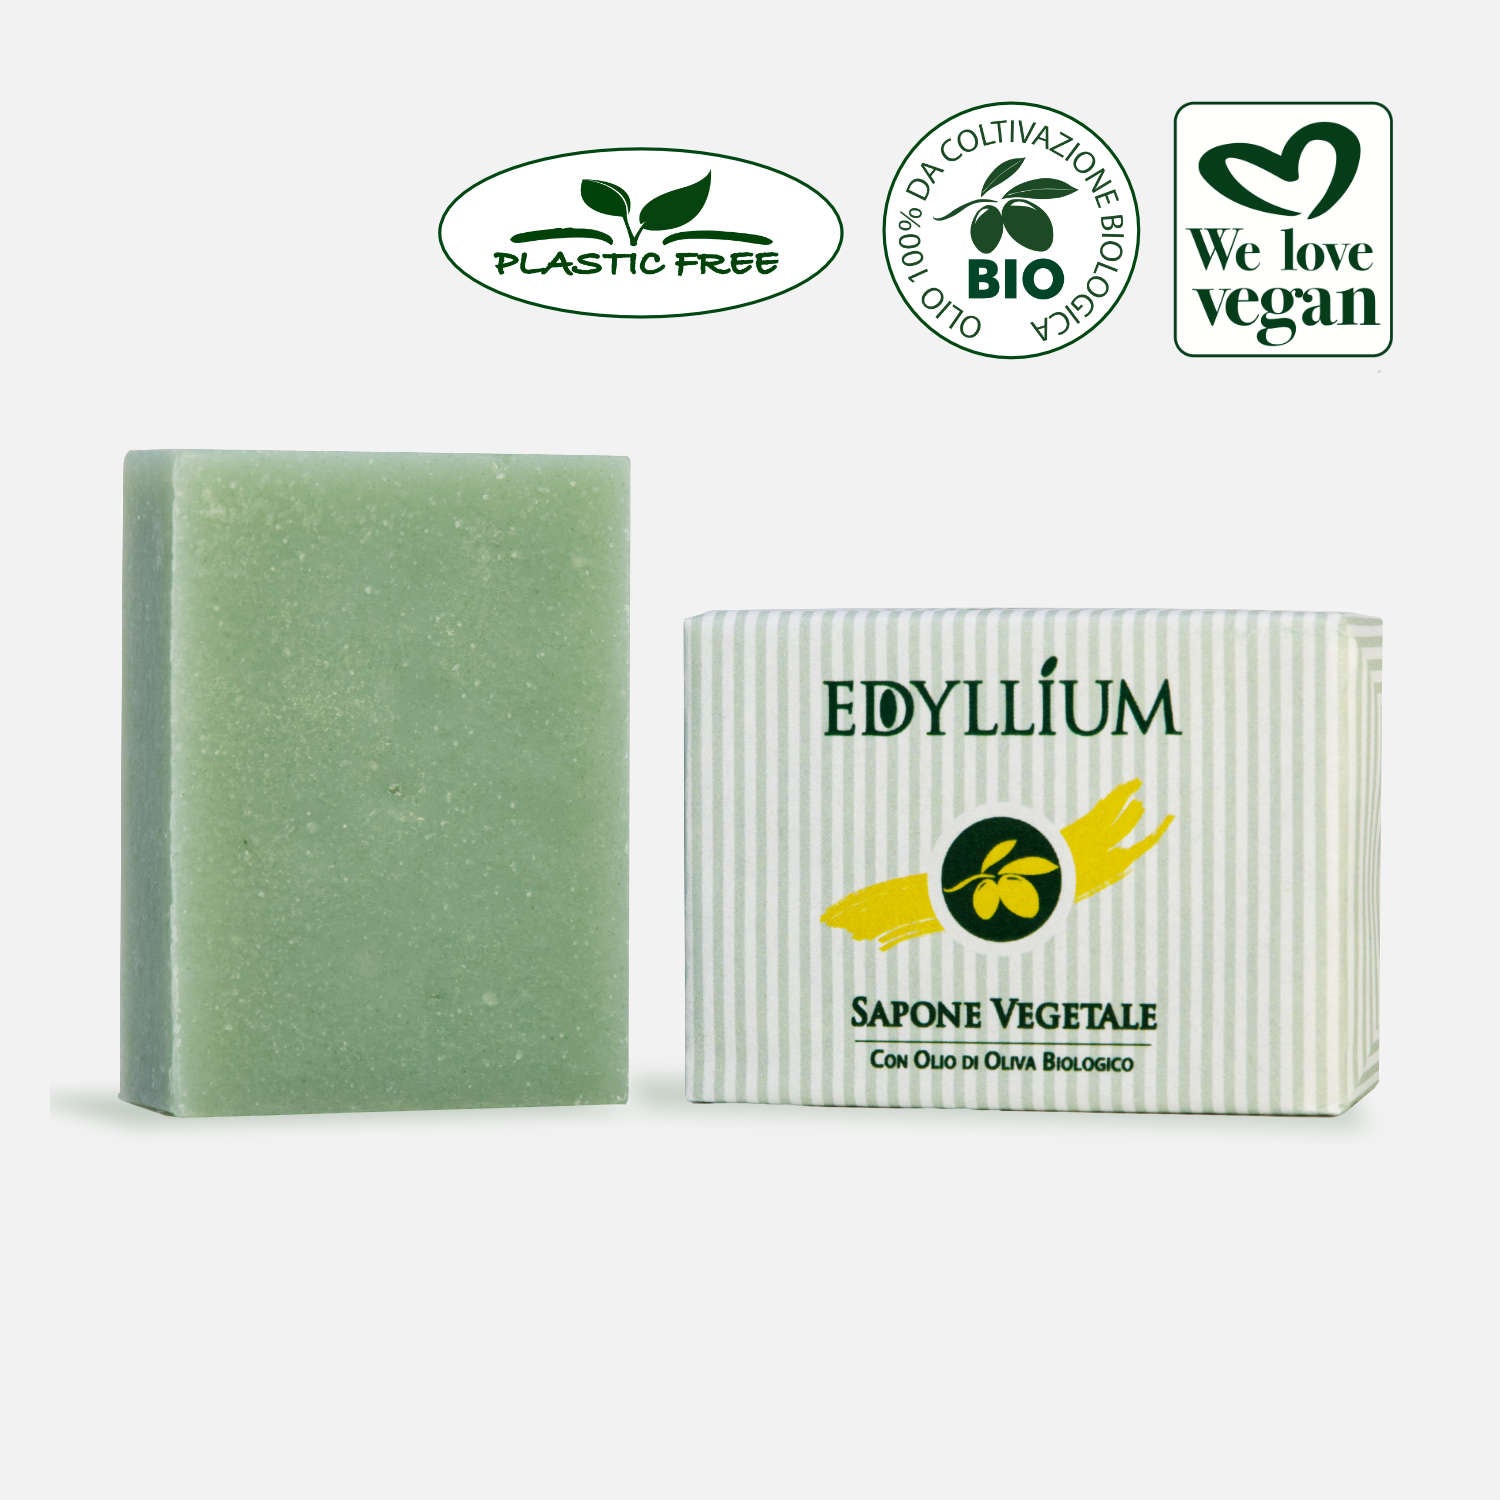 Edyllium sapone vegetale biologico - saponetta da 100 g